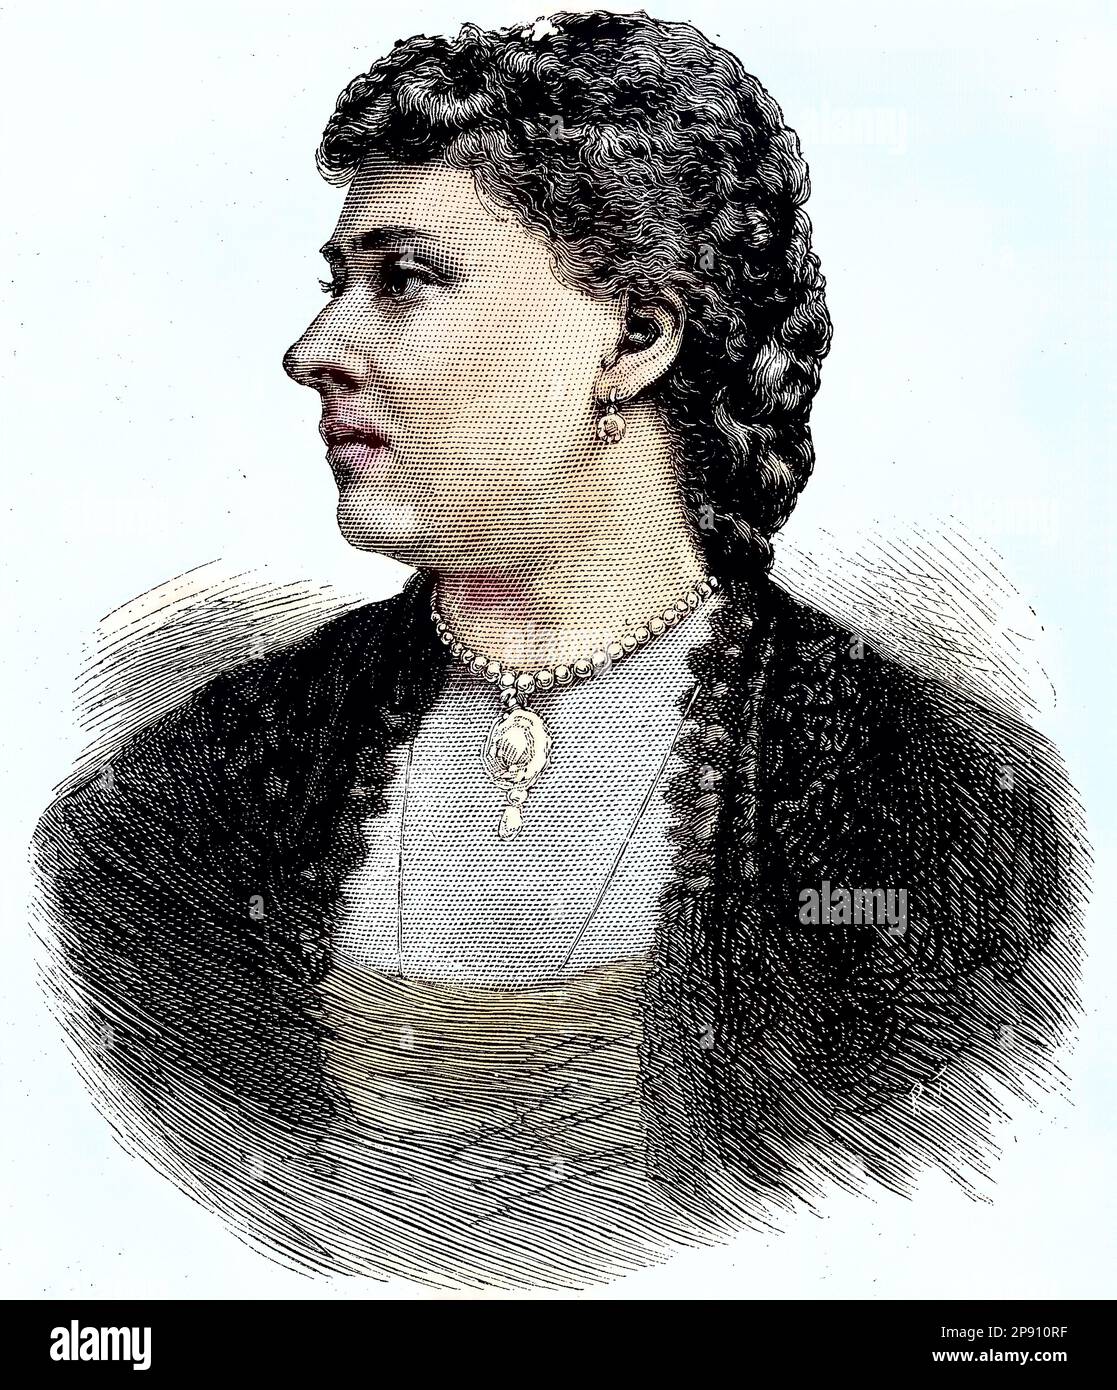 Prinzessin Beatrice des Vereinigten Königreichs, Beatrice Mary Victoria Feodore, später Prinzessin Henry von Battenberg, 1857 - 1944, Historisch, restaurierte digitale Reproduktion von einer Vorlage aus dem 19. Jahrhundert Foto Stock